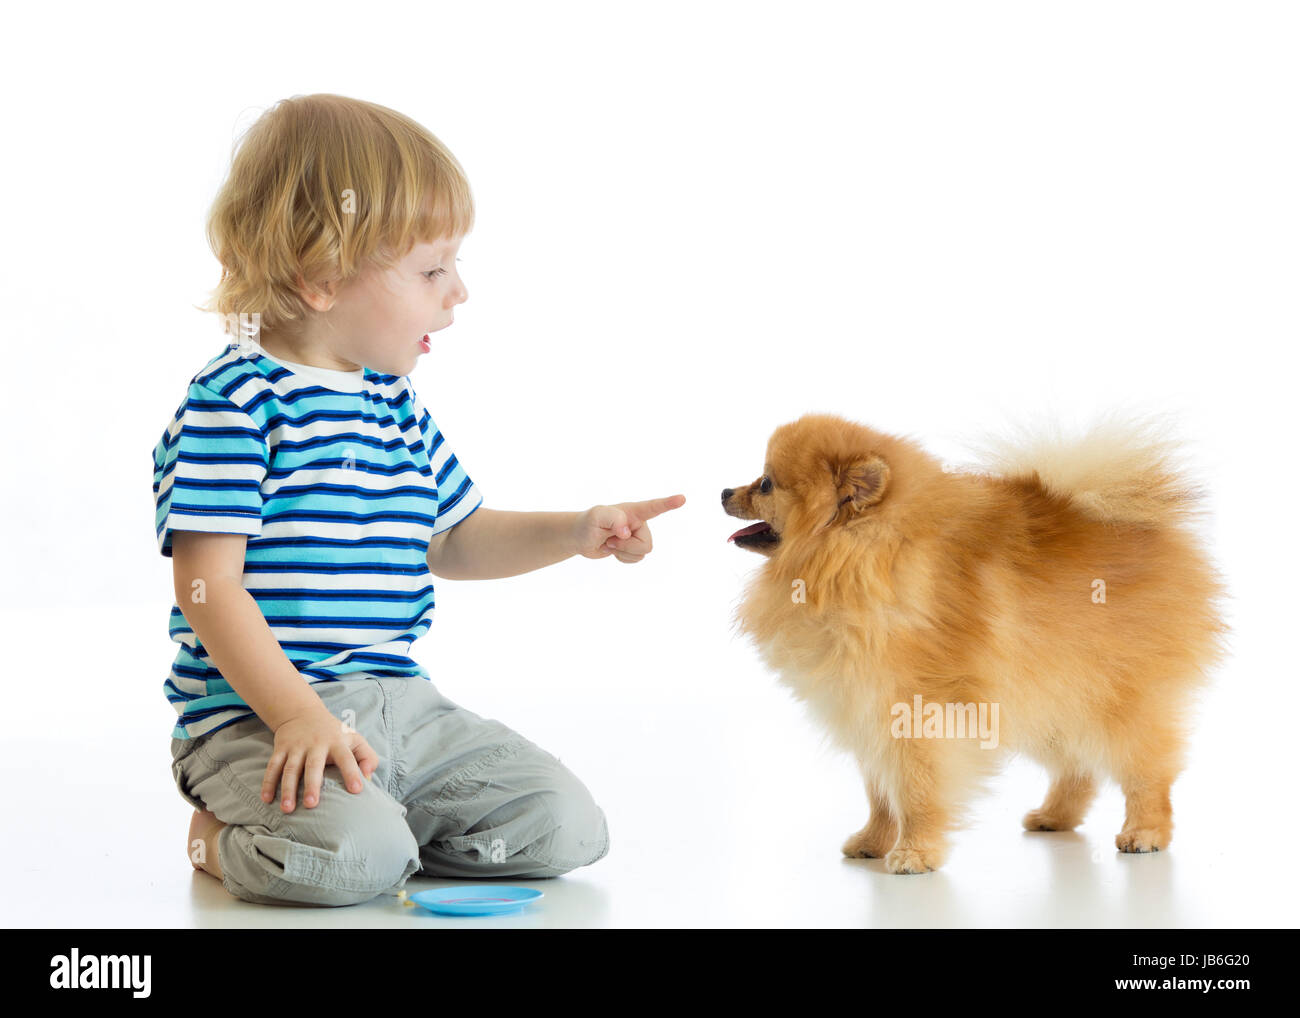 Child boy training Spitz dog. Isolated on white background. Stock Photo